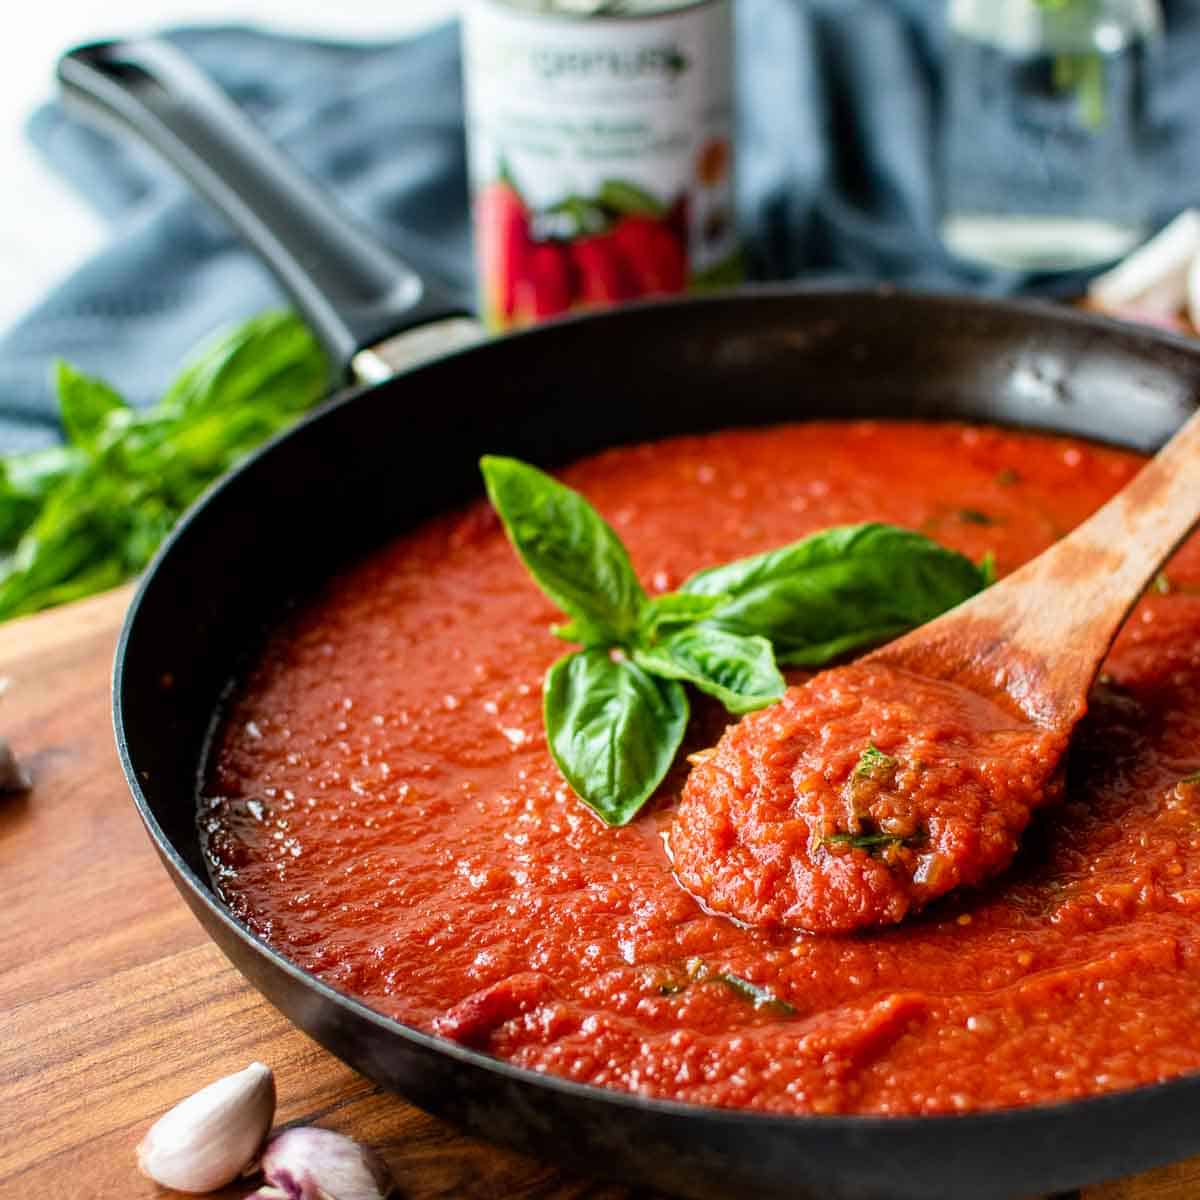 San Marzano Tomato Sauce (30 Minute Recipe) - Marcellina in Cucina